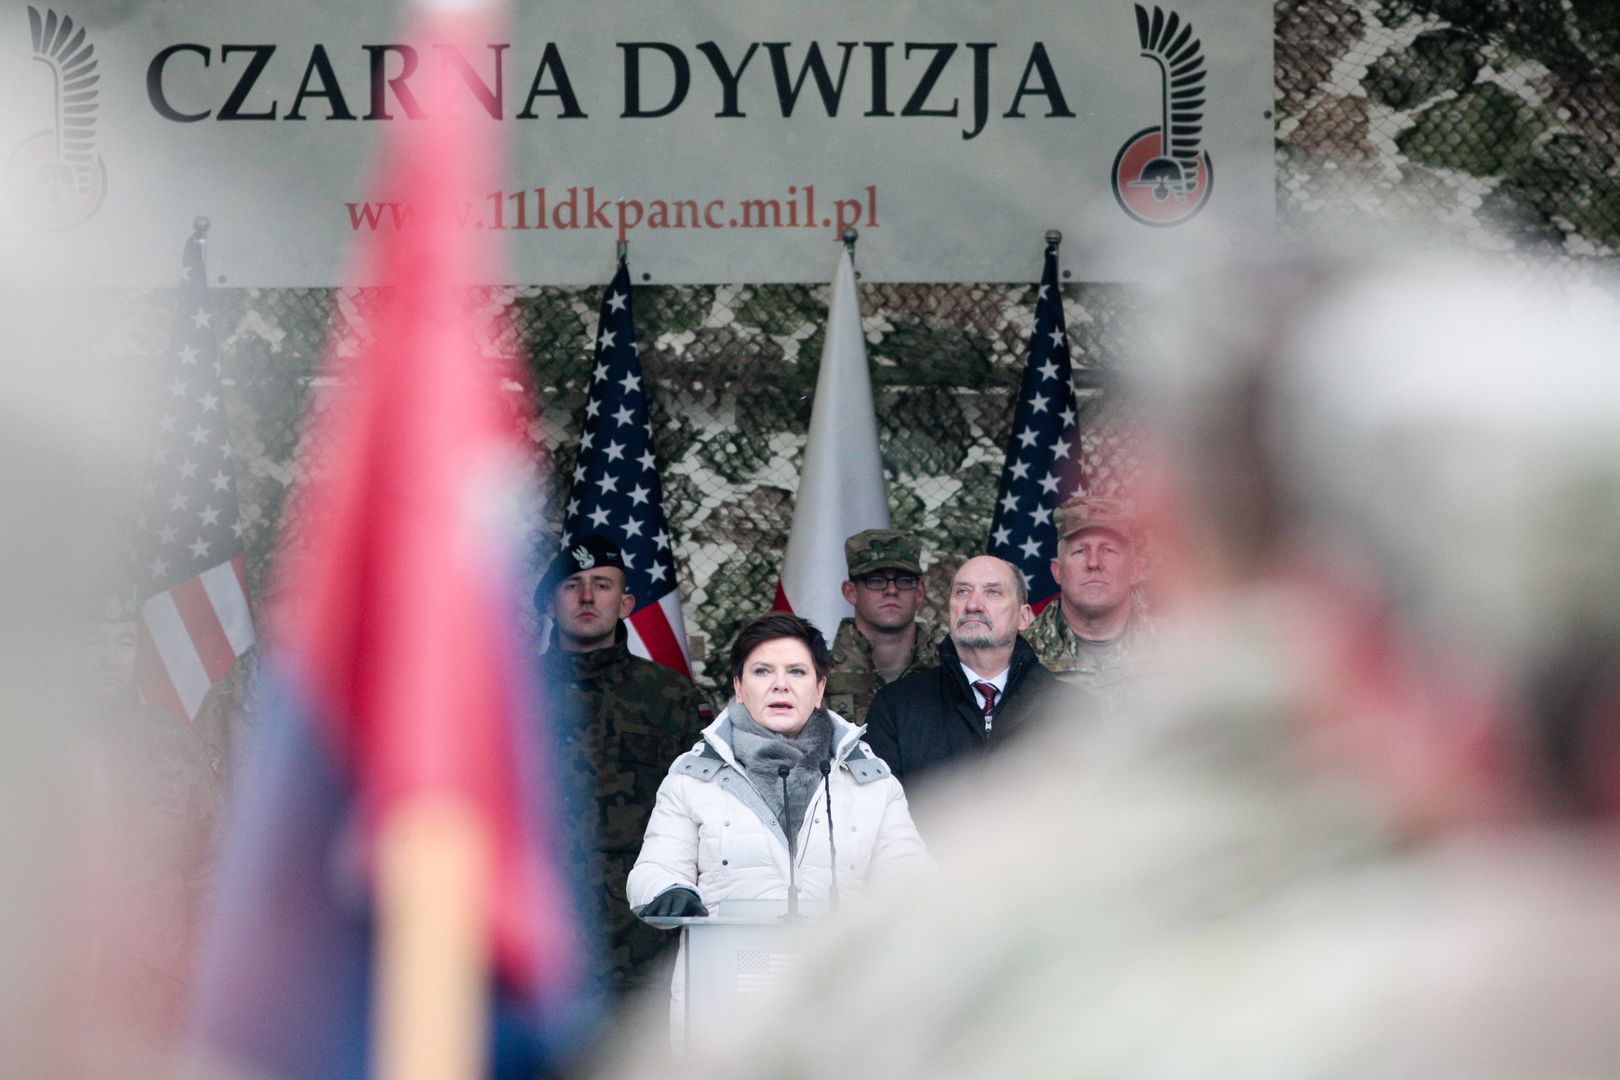 Powitanie Amerykanów w Polsce. Usłyszeli "Macierewicz do domu"